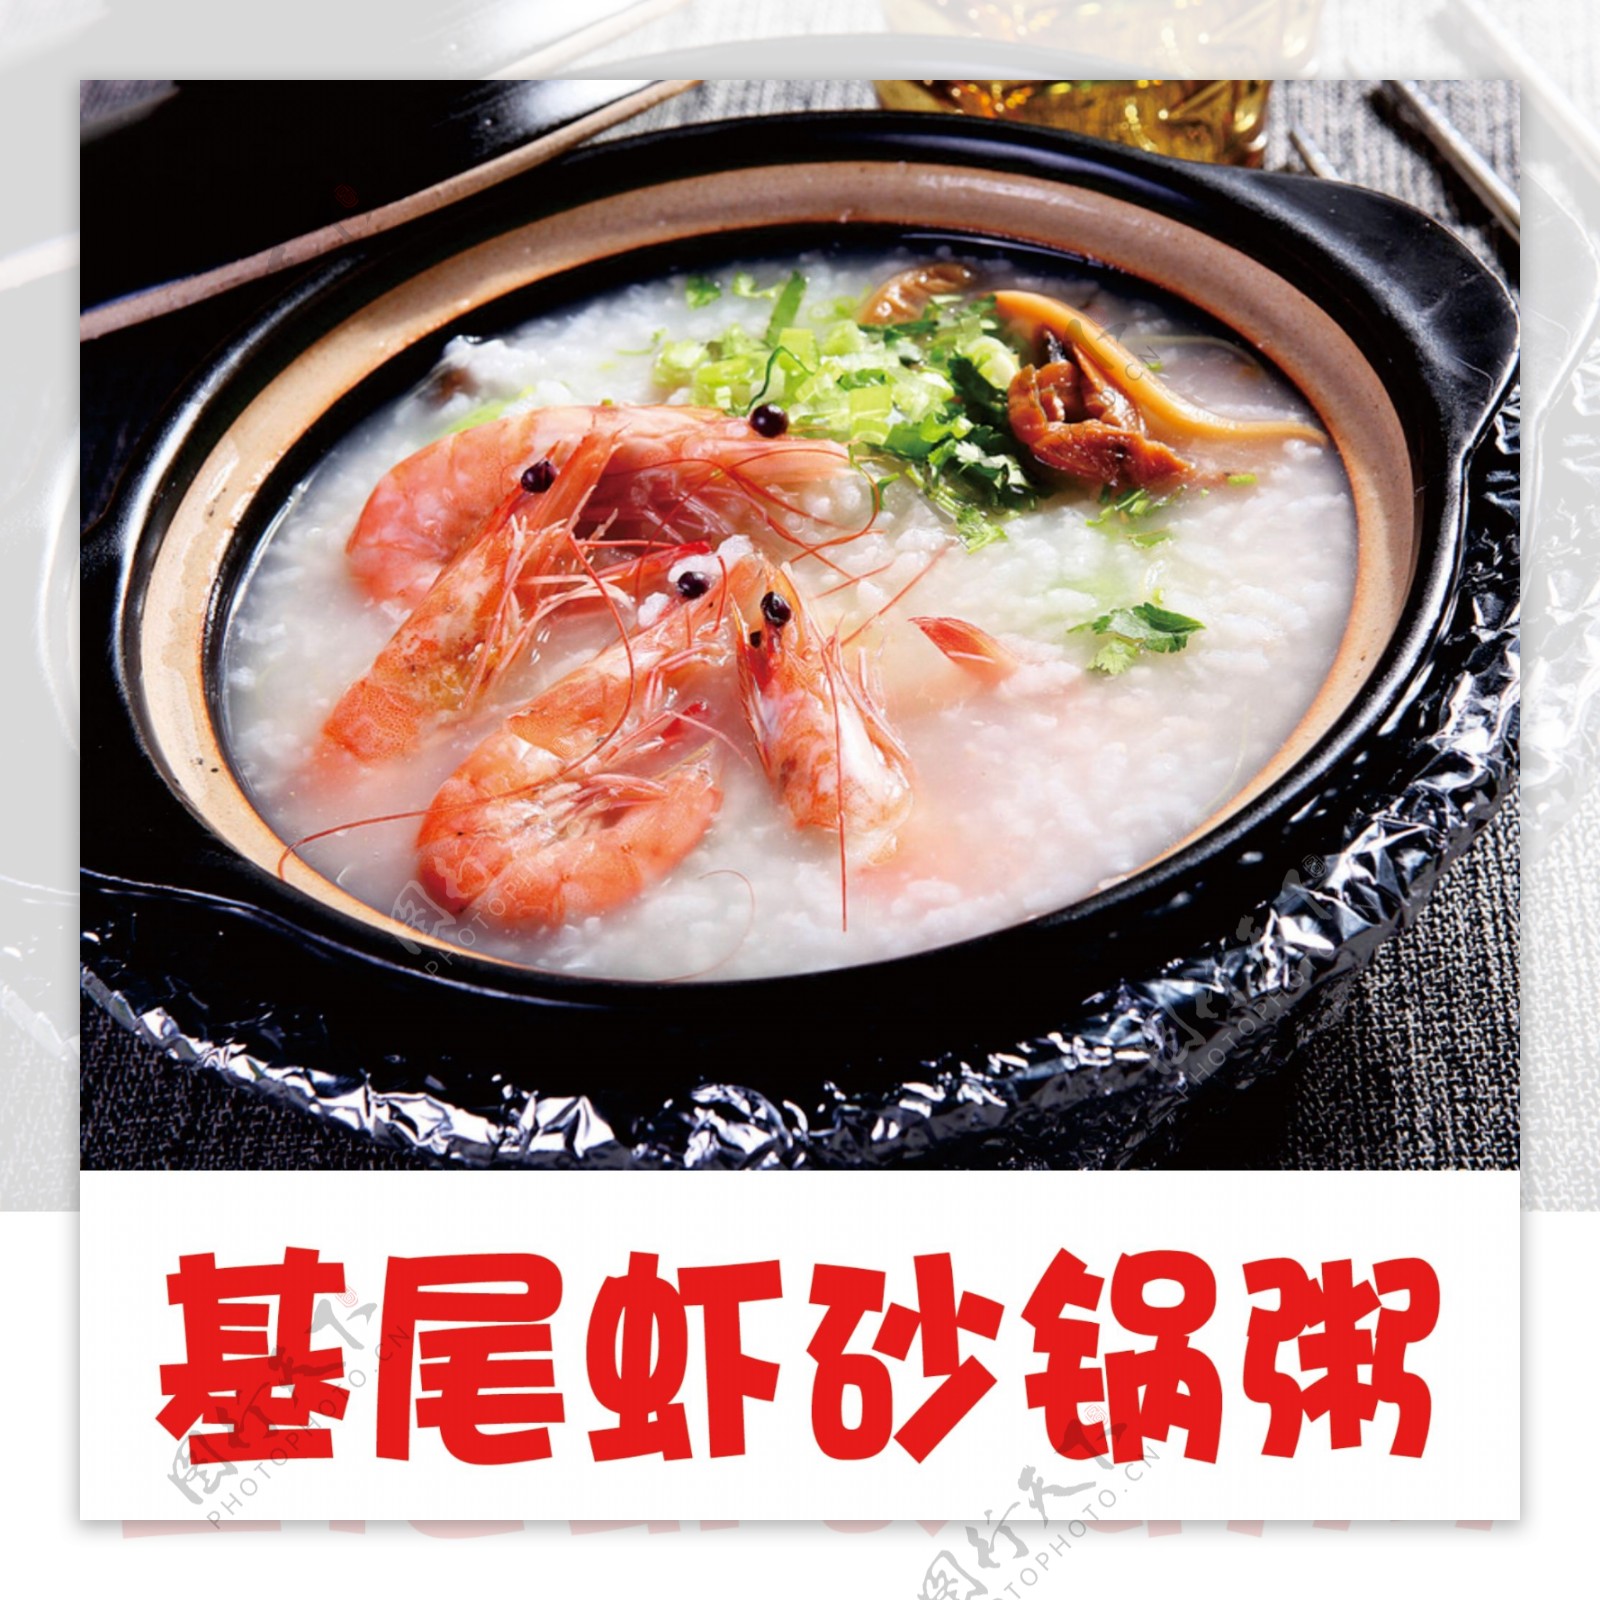 基围虾砂锅粥